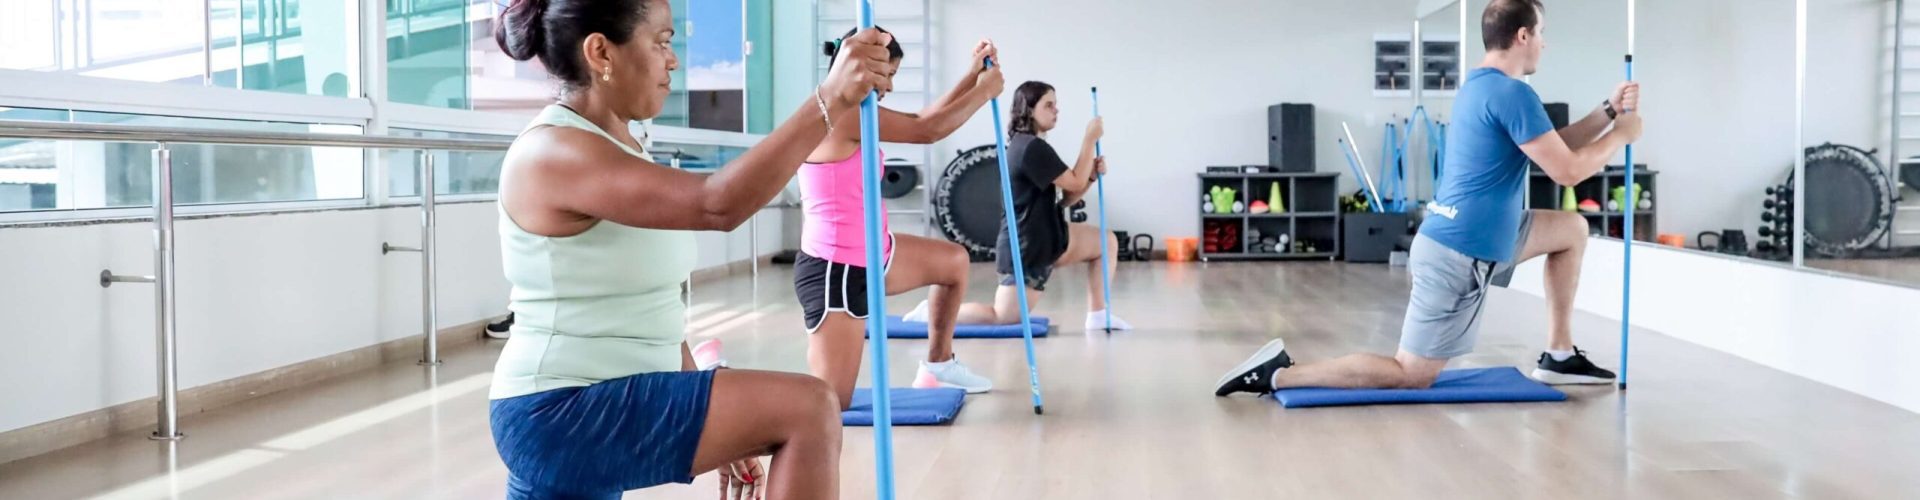 Pilates para principiantes: 4 exercícios para fazer em casa